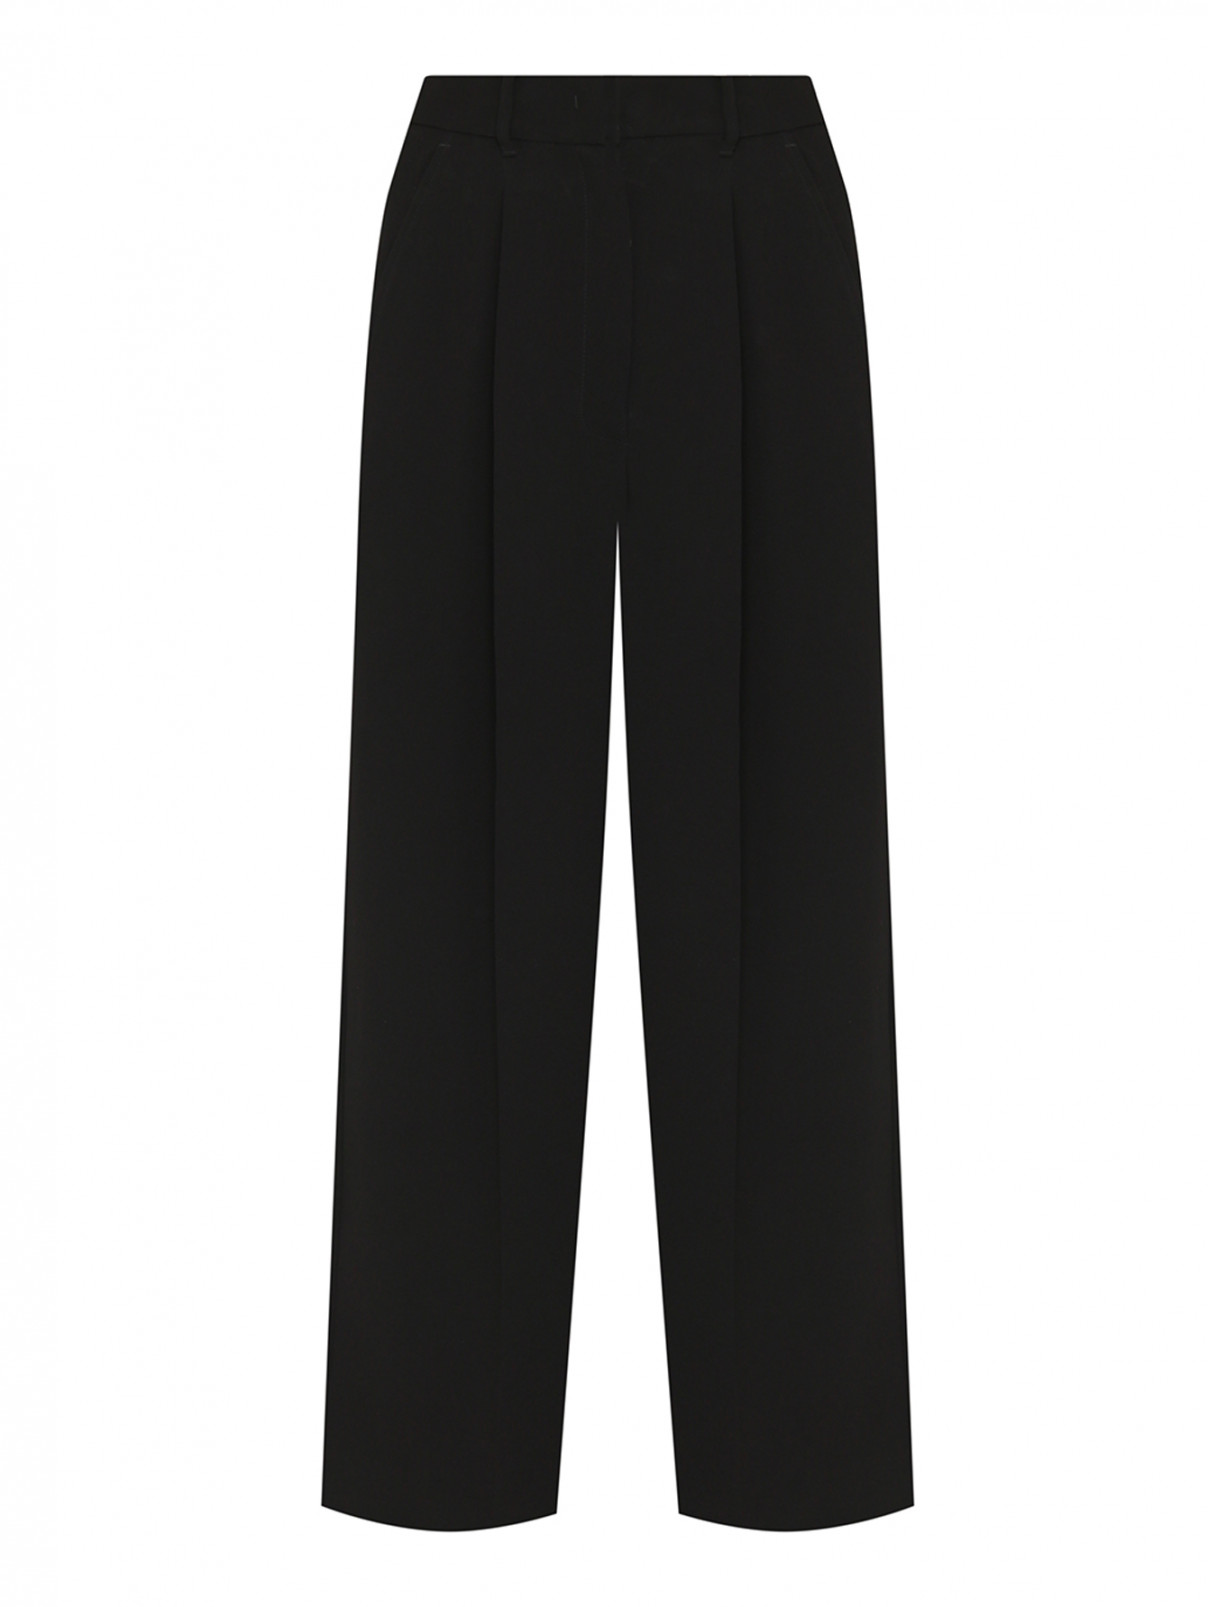 Однотонные брюки с высокой посадкой Weekend Max Mara  –  Общий вид  – Цвет:  Черный